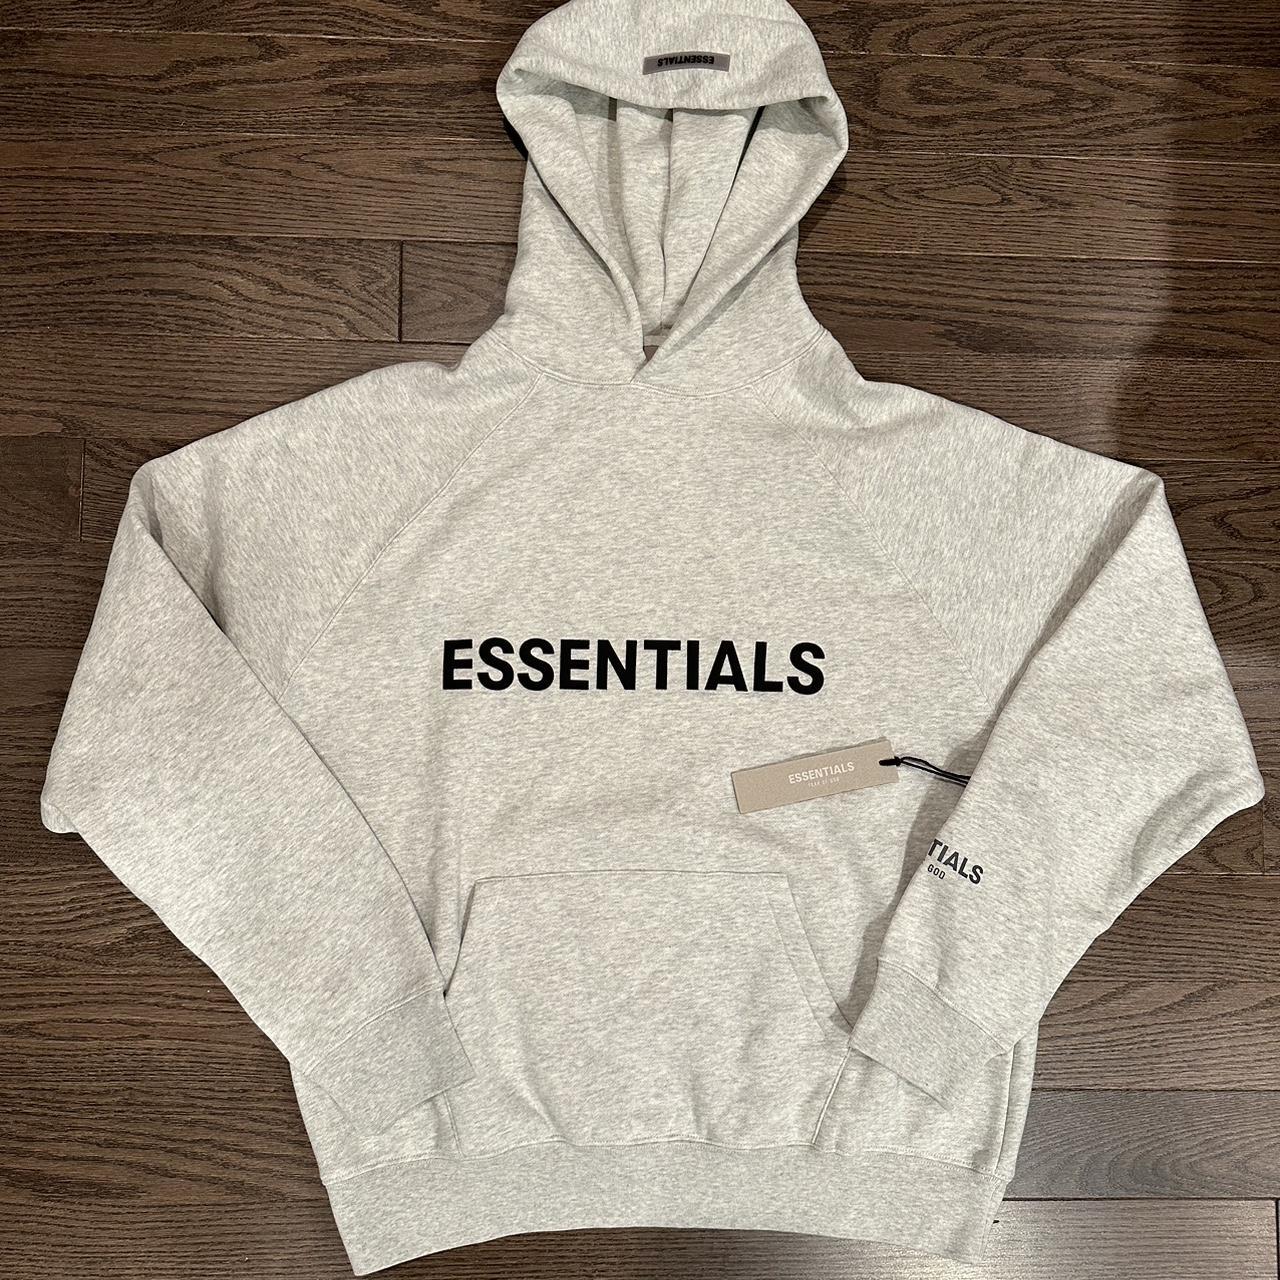 Fear of-god-essential-hoodie - Depop